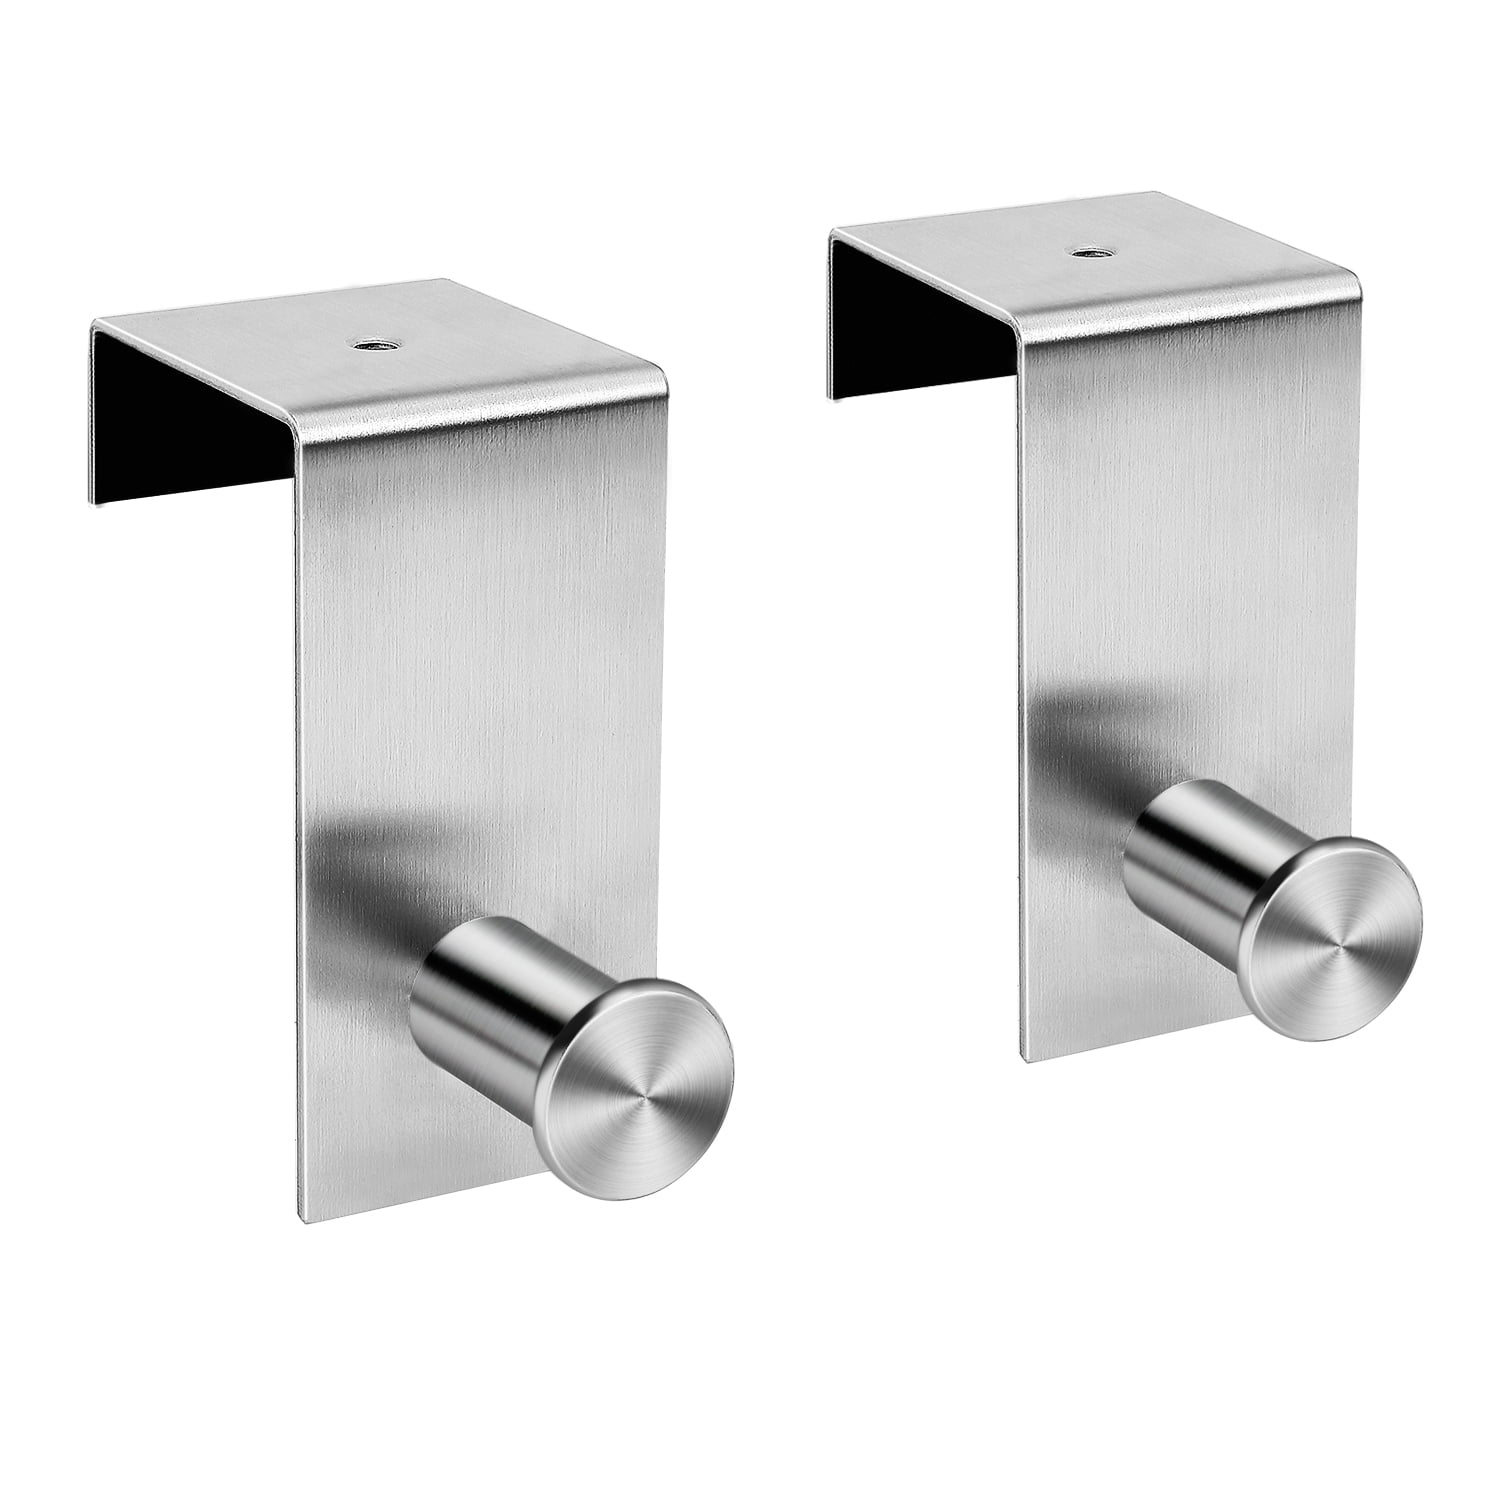 Stainless Steel Door Home Bathroom Kitchen Hanger Rack Holder Shelf 4 hooks